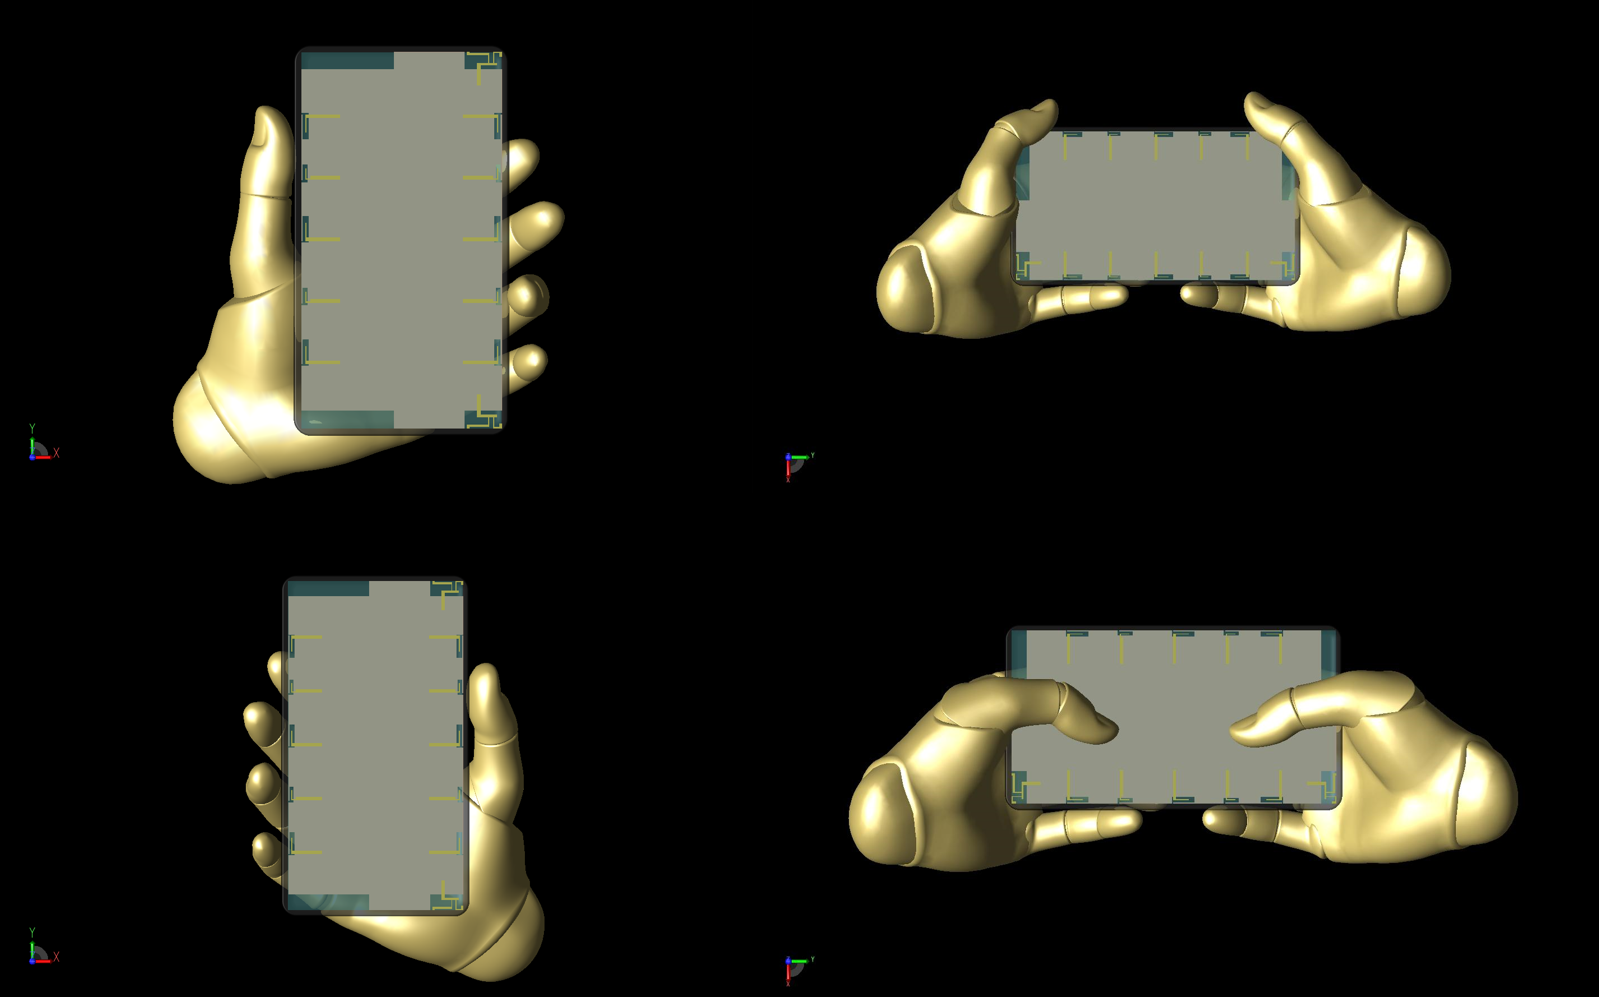 図15：XFdtd内のコントロールを使用して配置された、研究で使用されたポーズ可能な手のモデルの4つの位置を示す。左上から時計回りに：左手保持、両手を横に、両手でタイピング、右手保持。